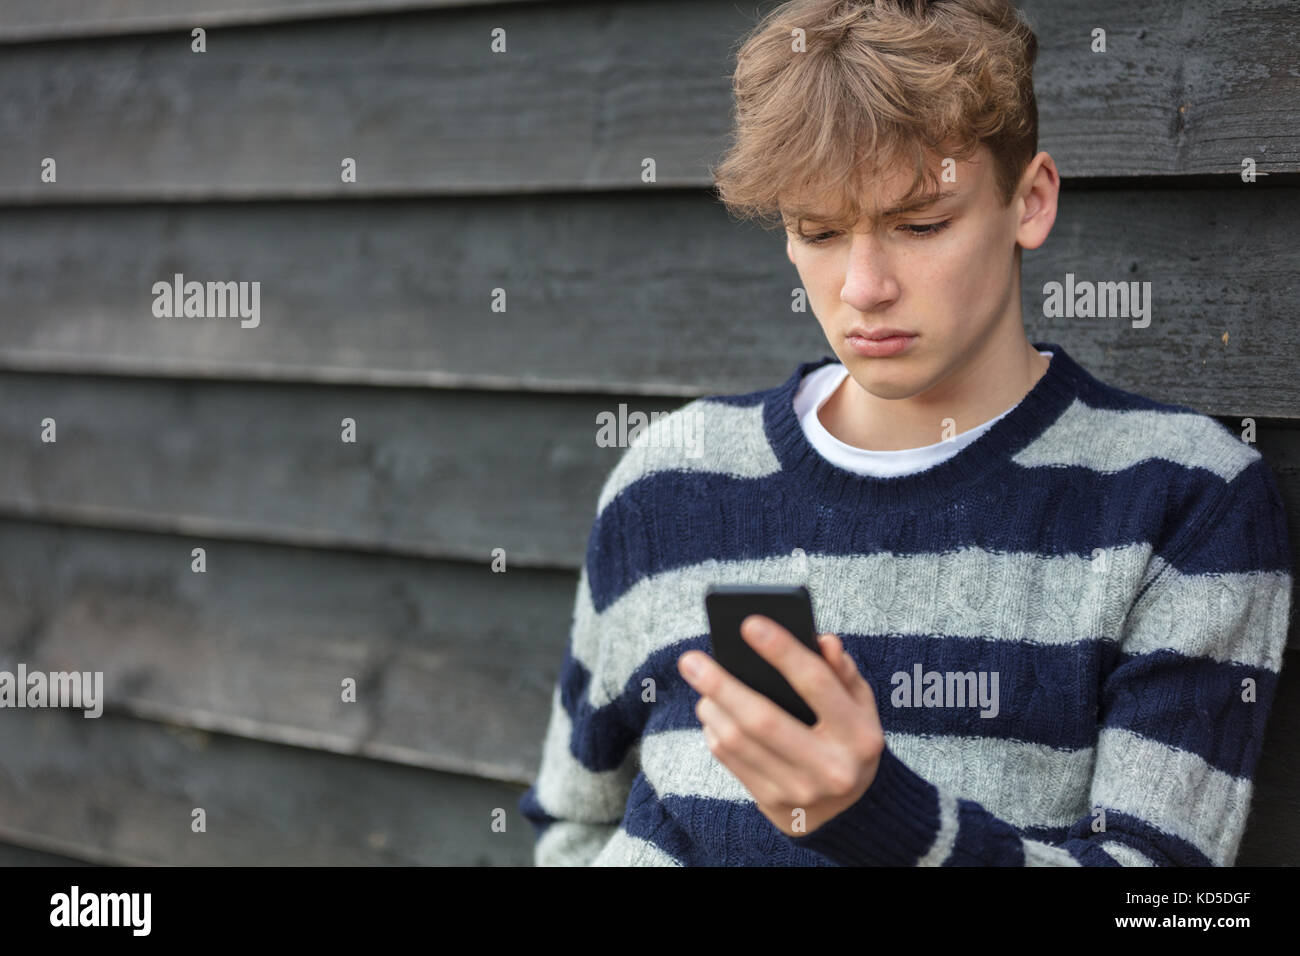 Traurig, deprimiert nachdenklich männliche junge Teenager blonde Kind außerhalb mit Handy für SMS-Nachrichten oder Social Media Stockfoto